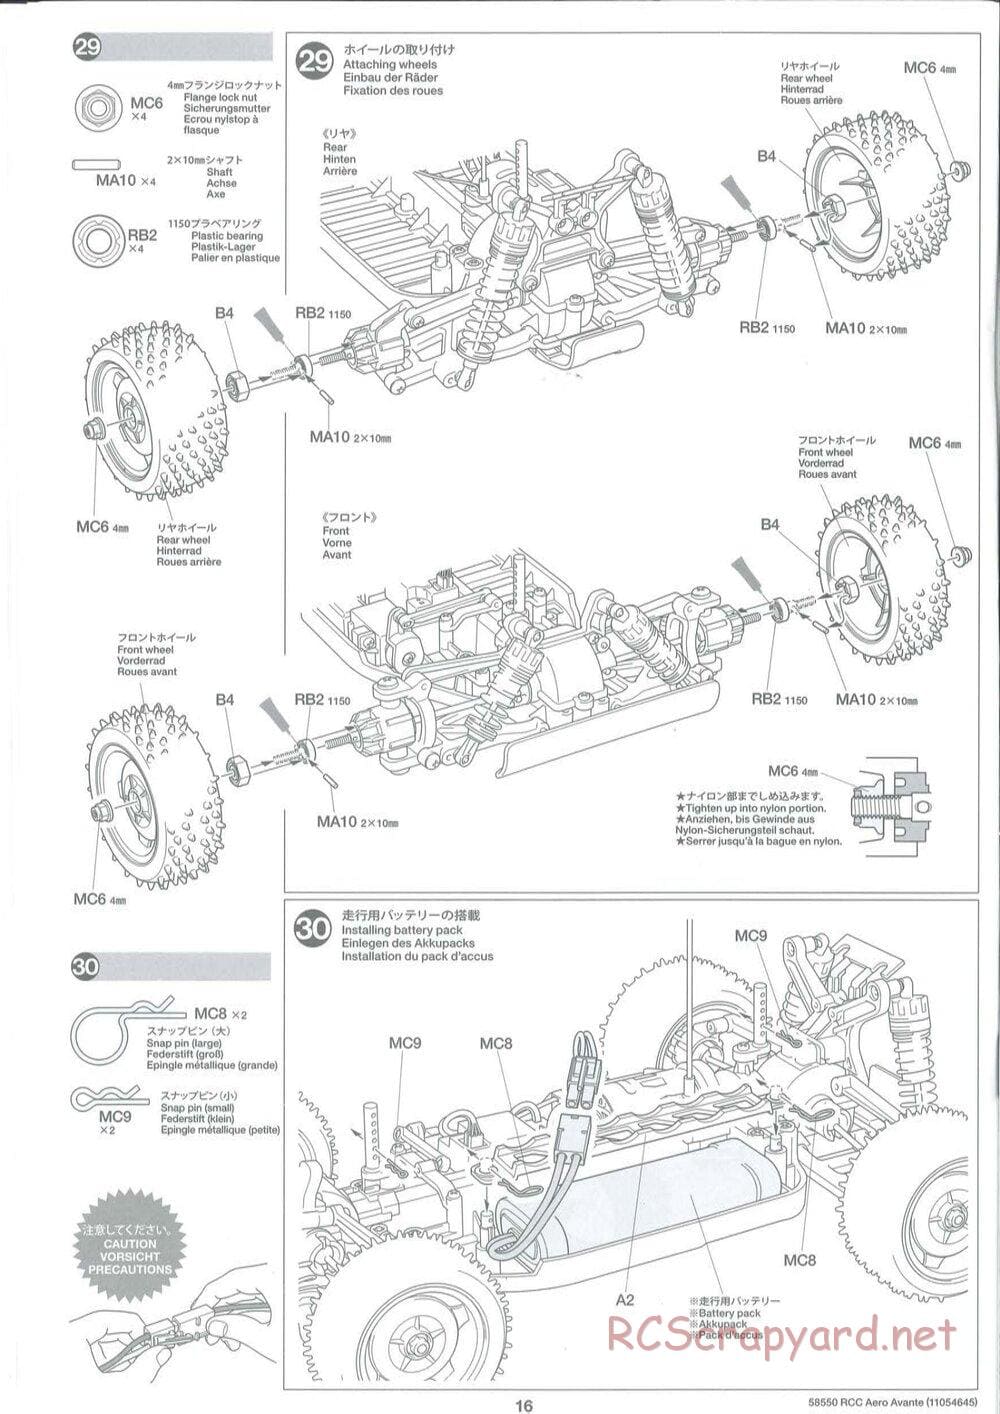 Tamiya - Aero Avante Chassis - Manual - Page 16